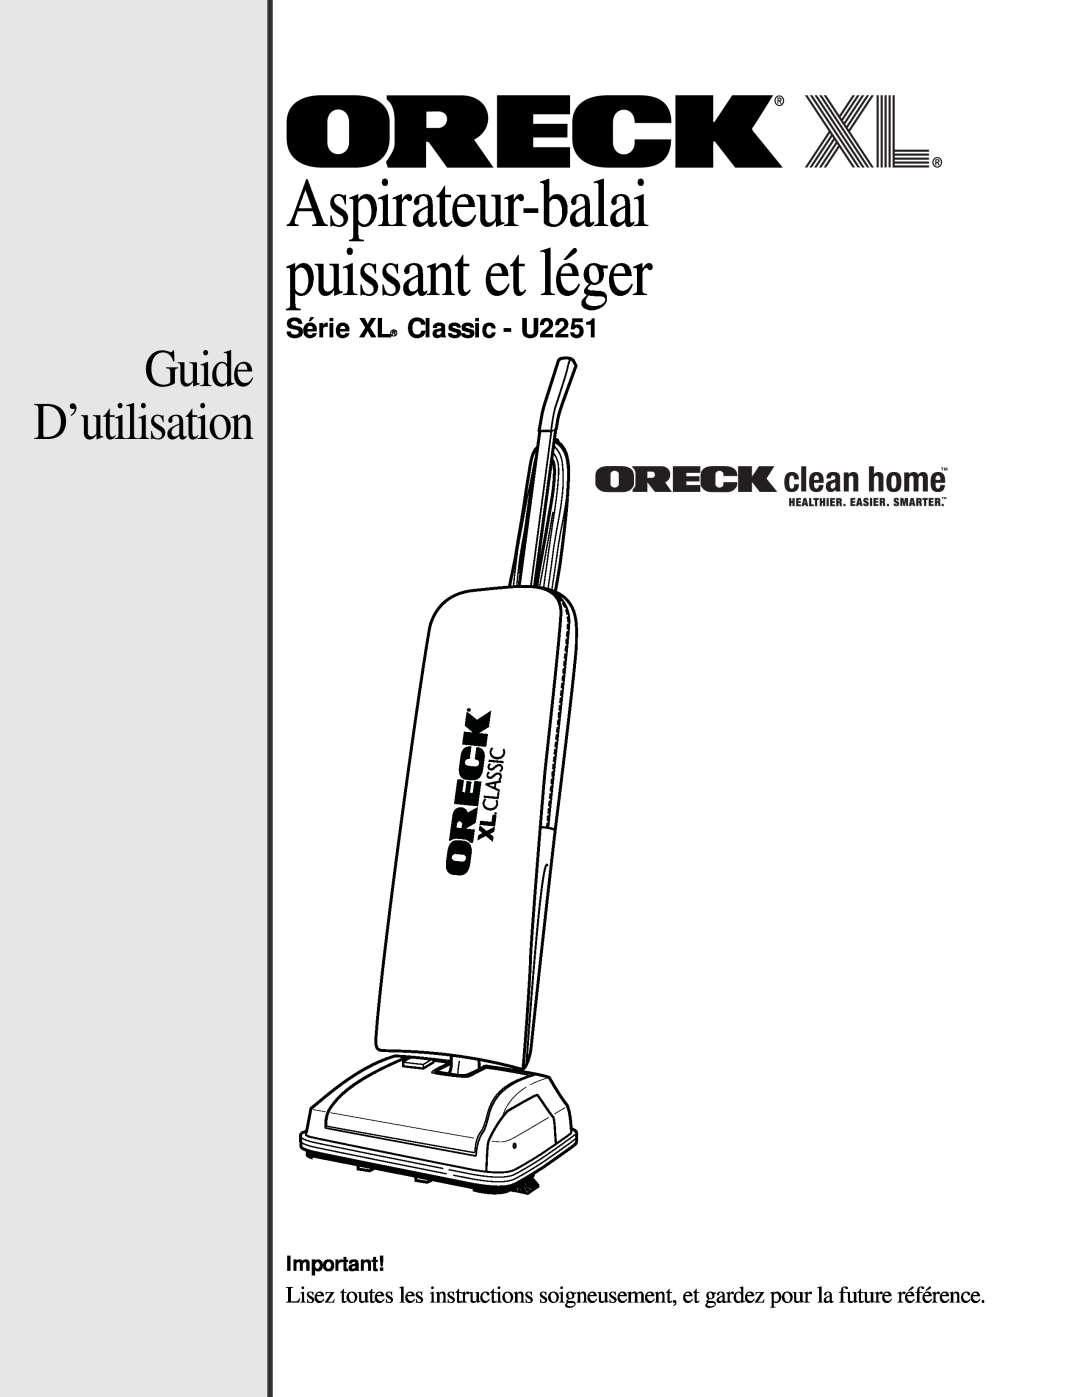 Oreck manual Aspirateur-balaipuissant et léger, Guide D’utilisation, Série XL Classic - U2251 